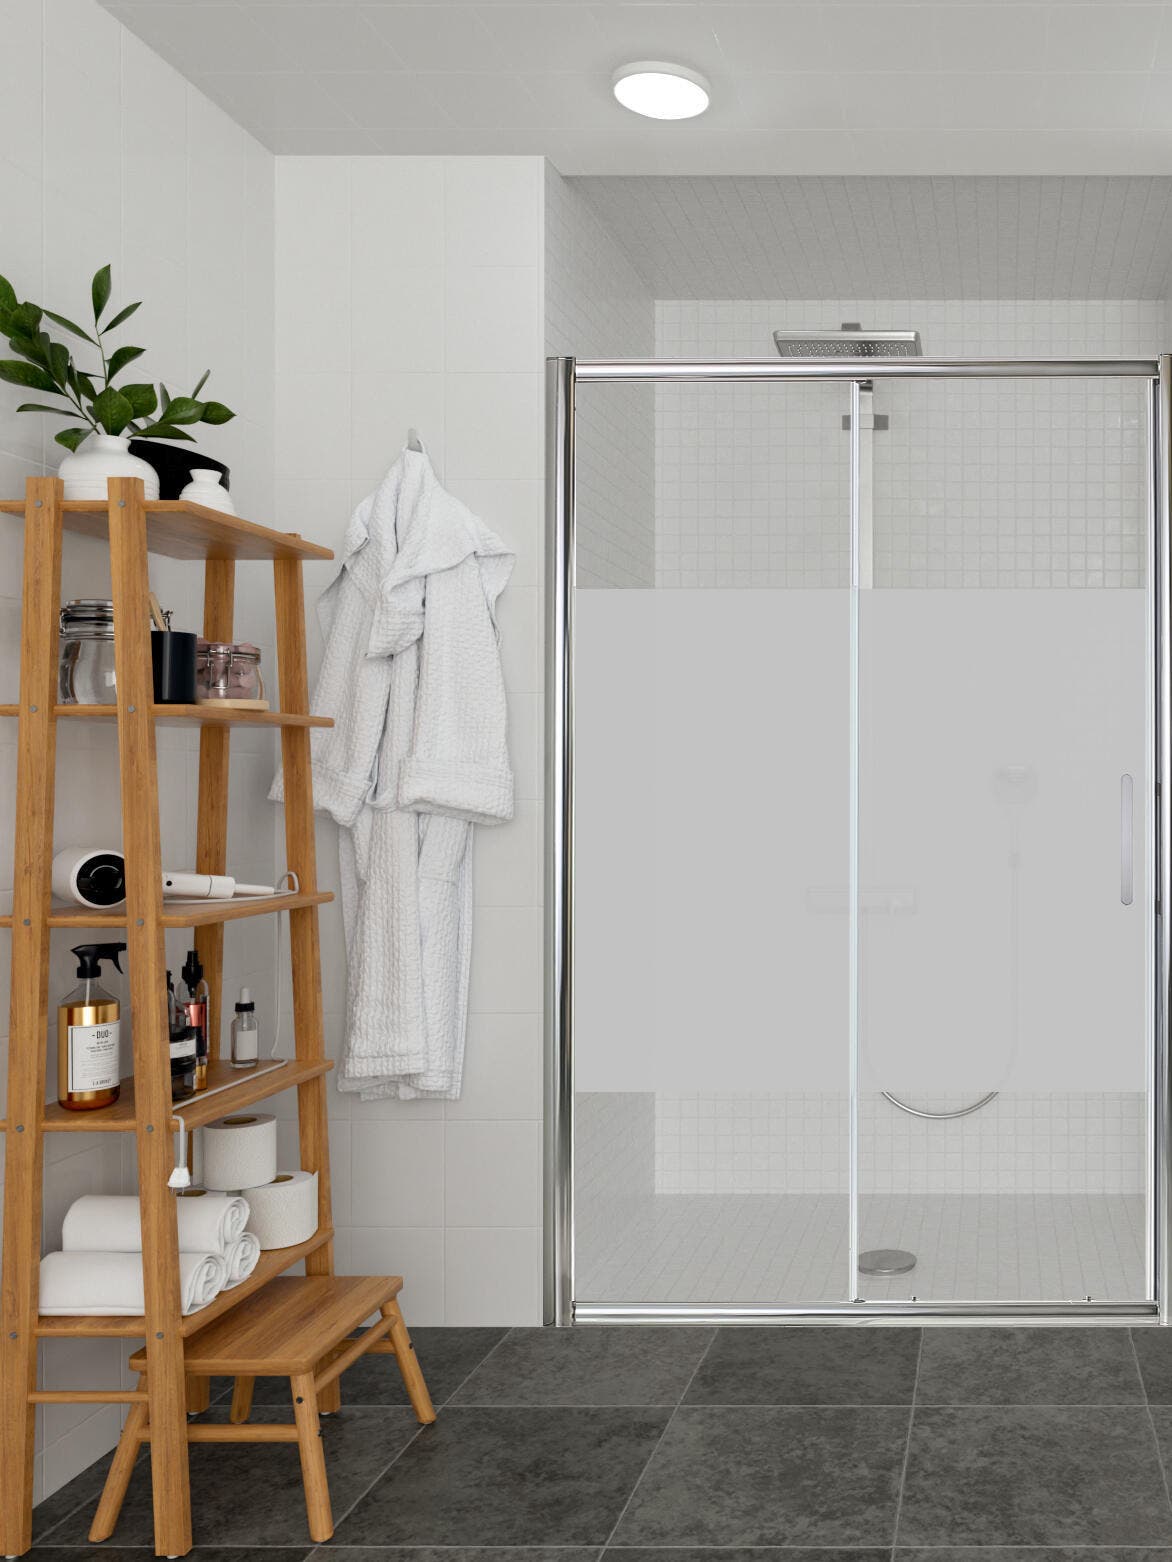 Mampara ducha con rodamientos vistos - Ideal Mamparas